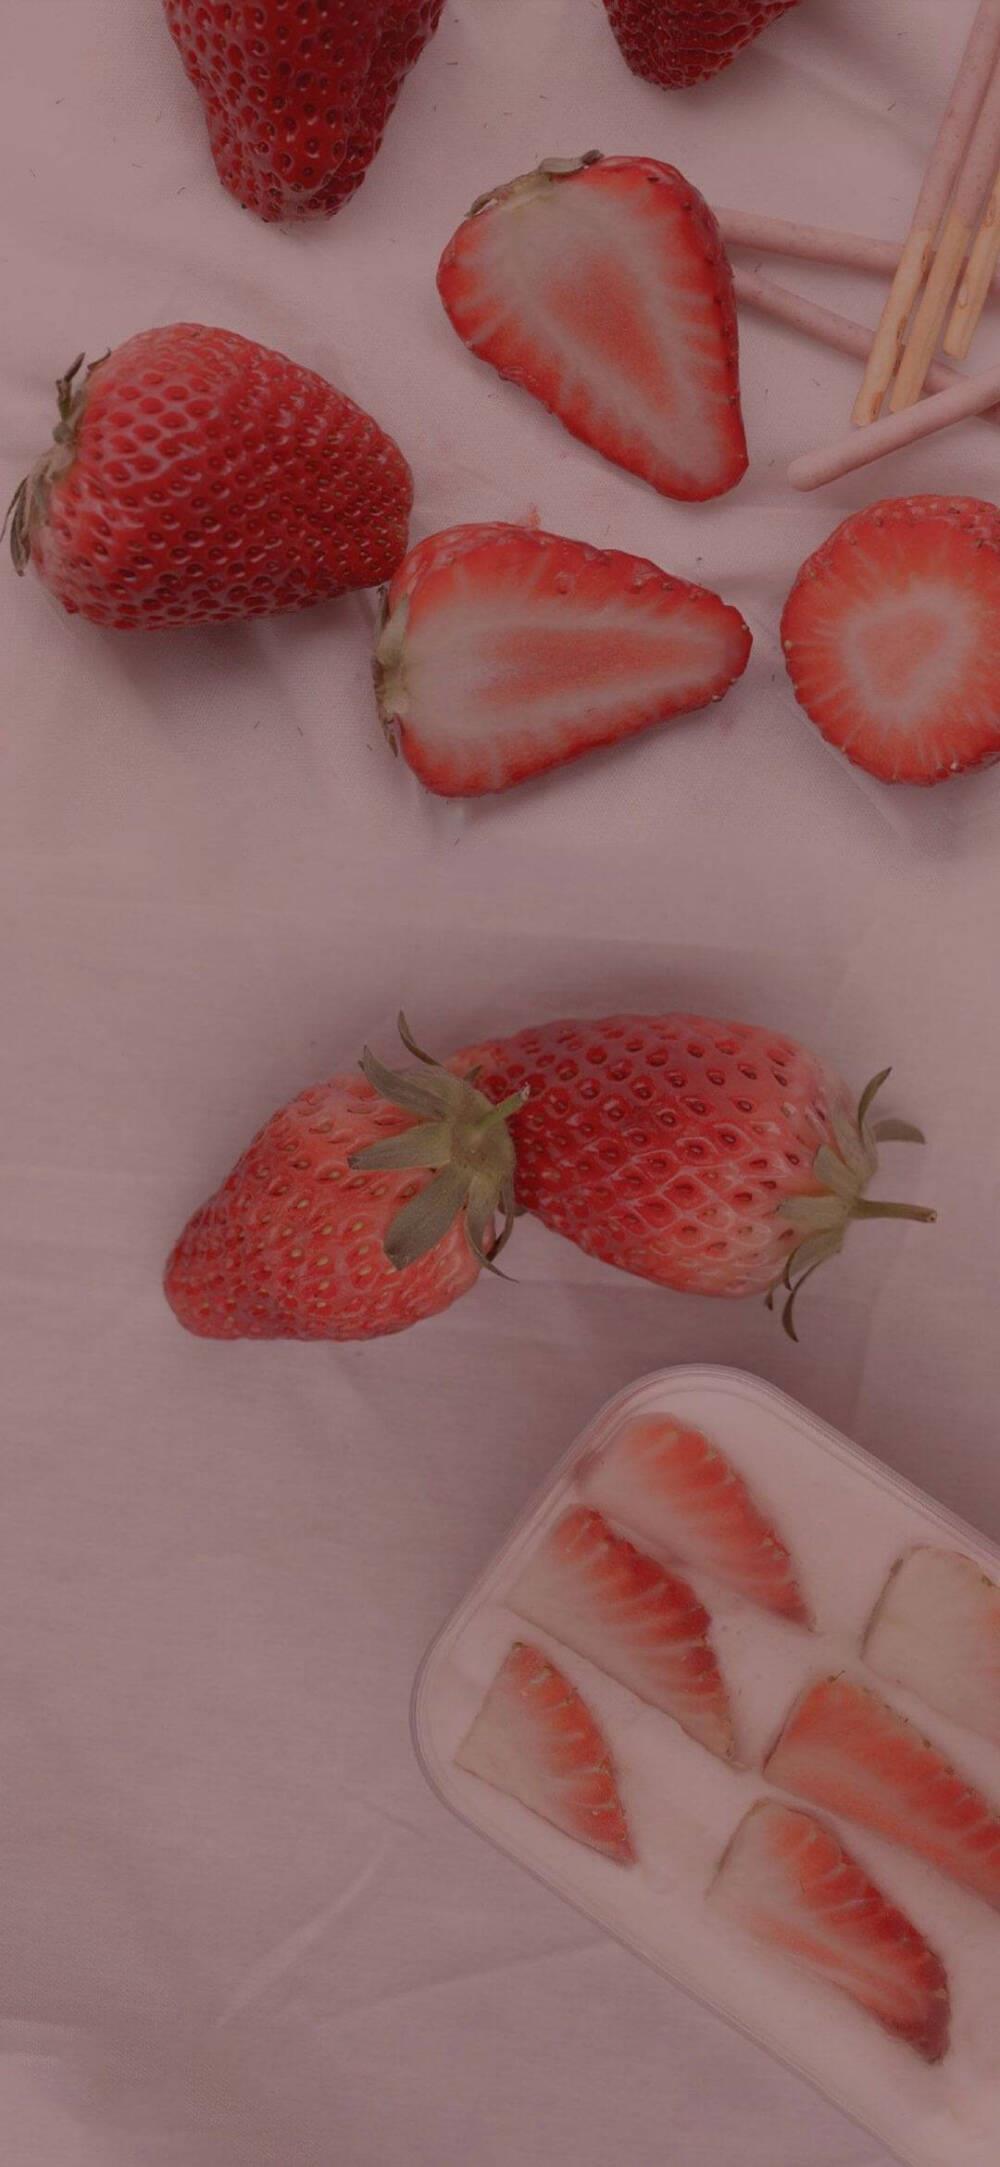 红彤彤的水果图片|草莓高清手机竖屏壁纸